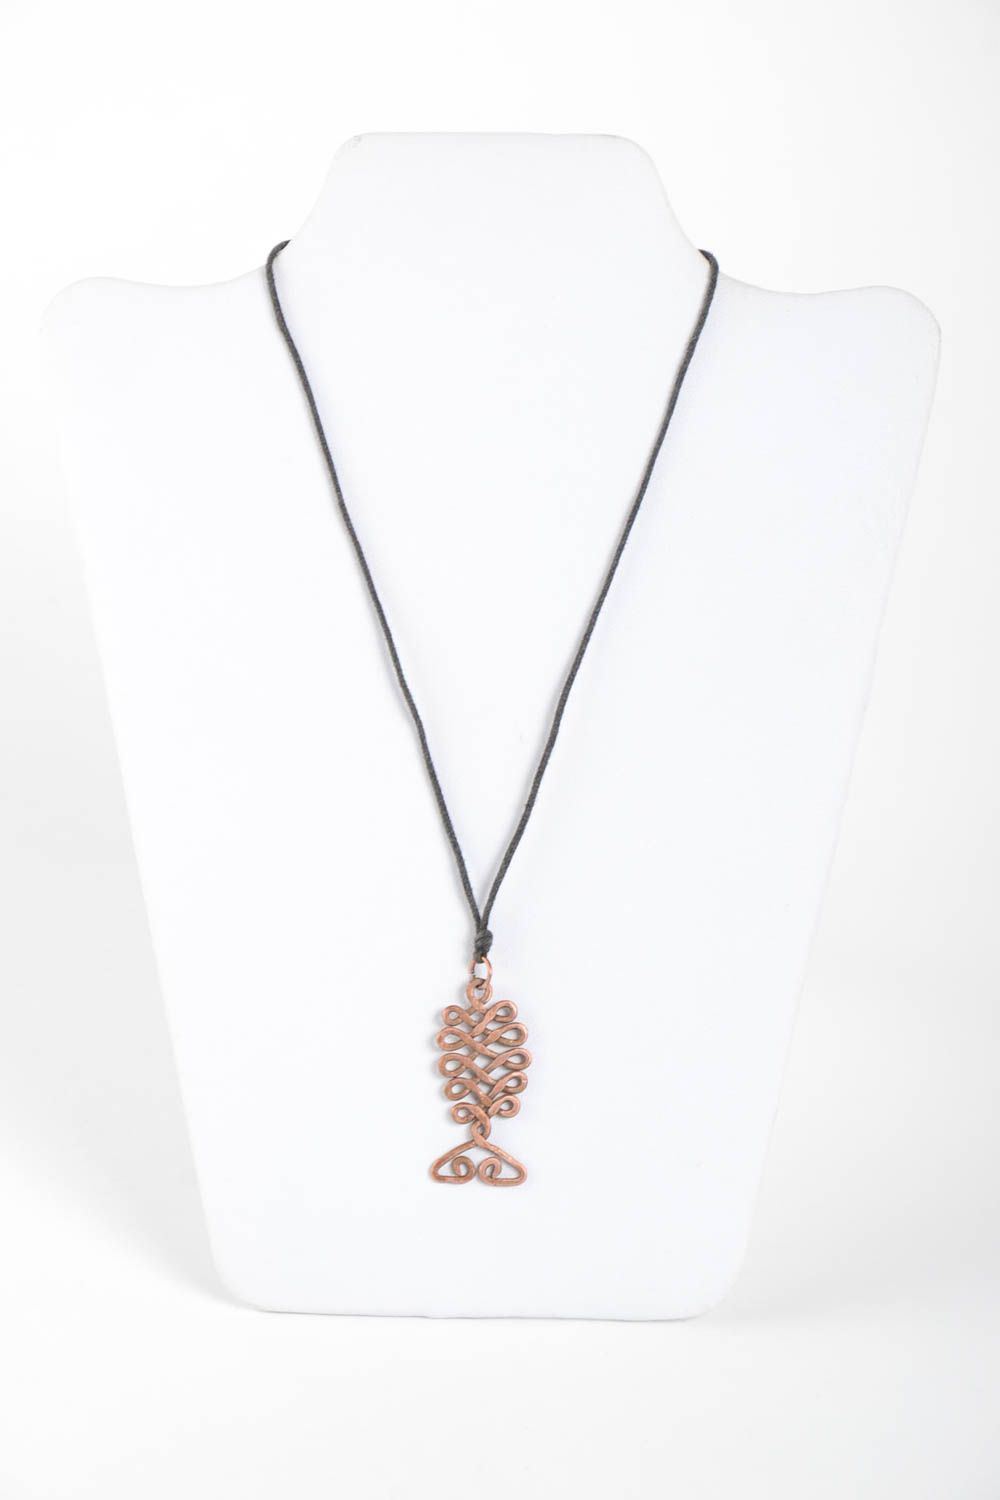 Handmade copper pendant copper accessories fashion jewelry fashion jewelry photo 2